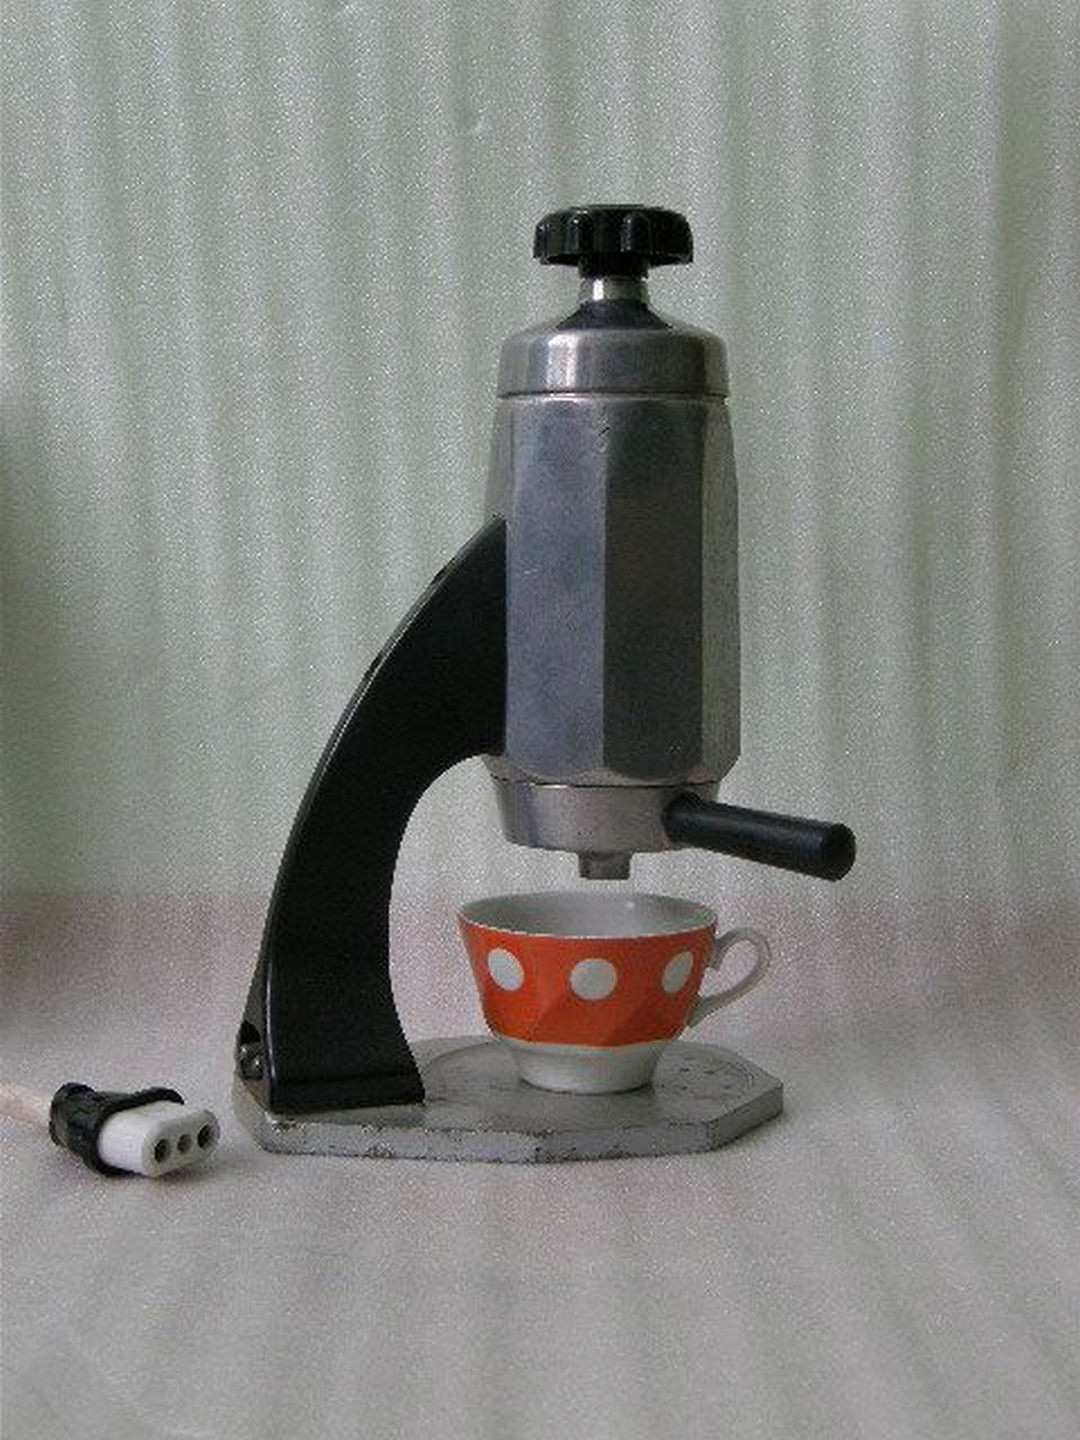 Soviet big espresso machine 1960s vintage industrial retro kitchen equipment